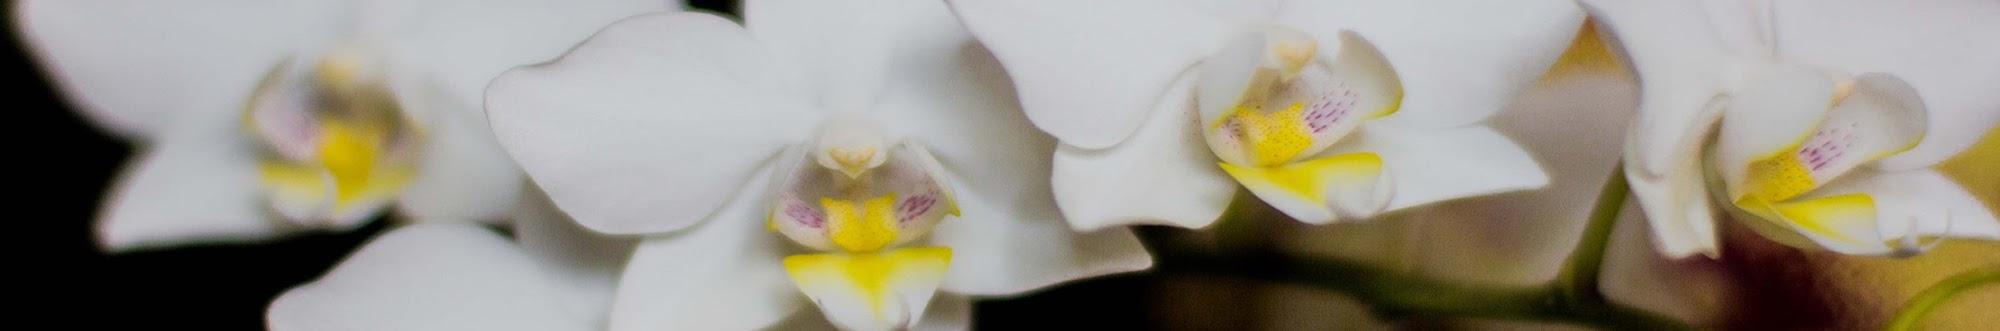 Орхидеи Инны Халиф. Дневник наблюдений